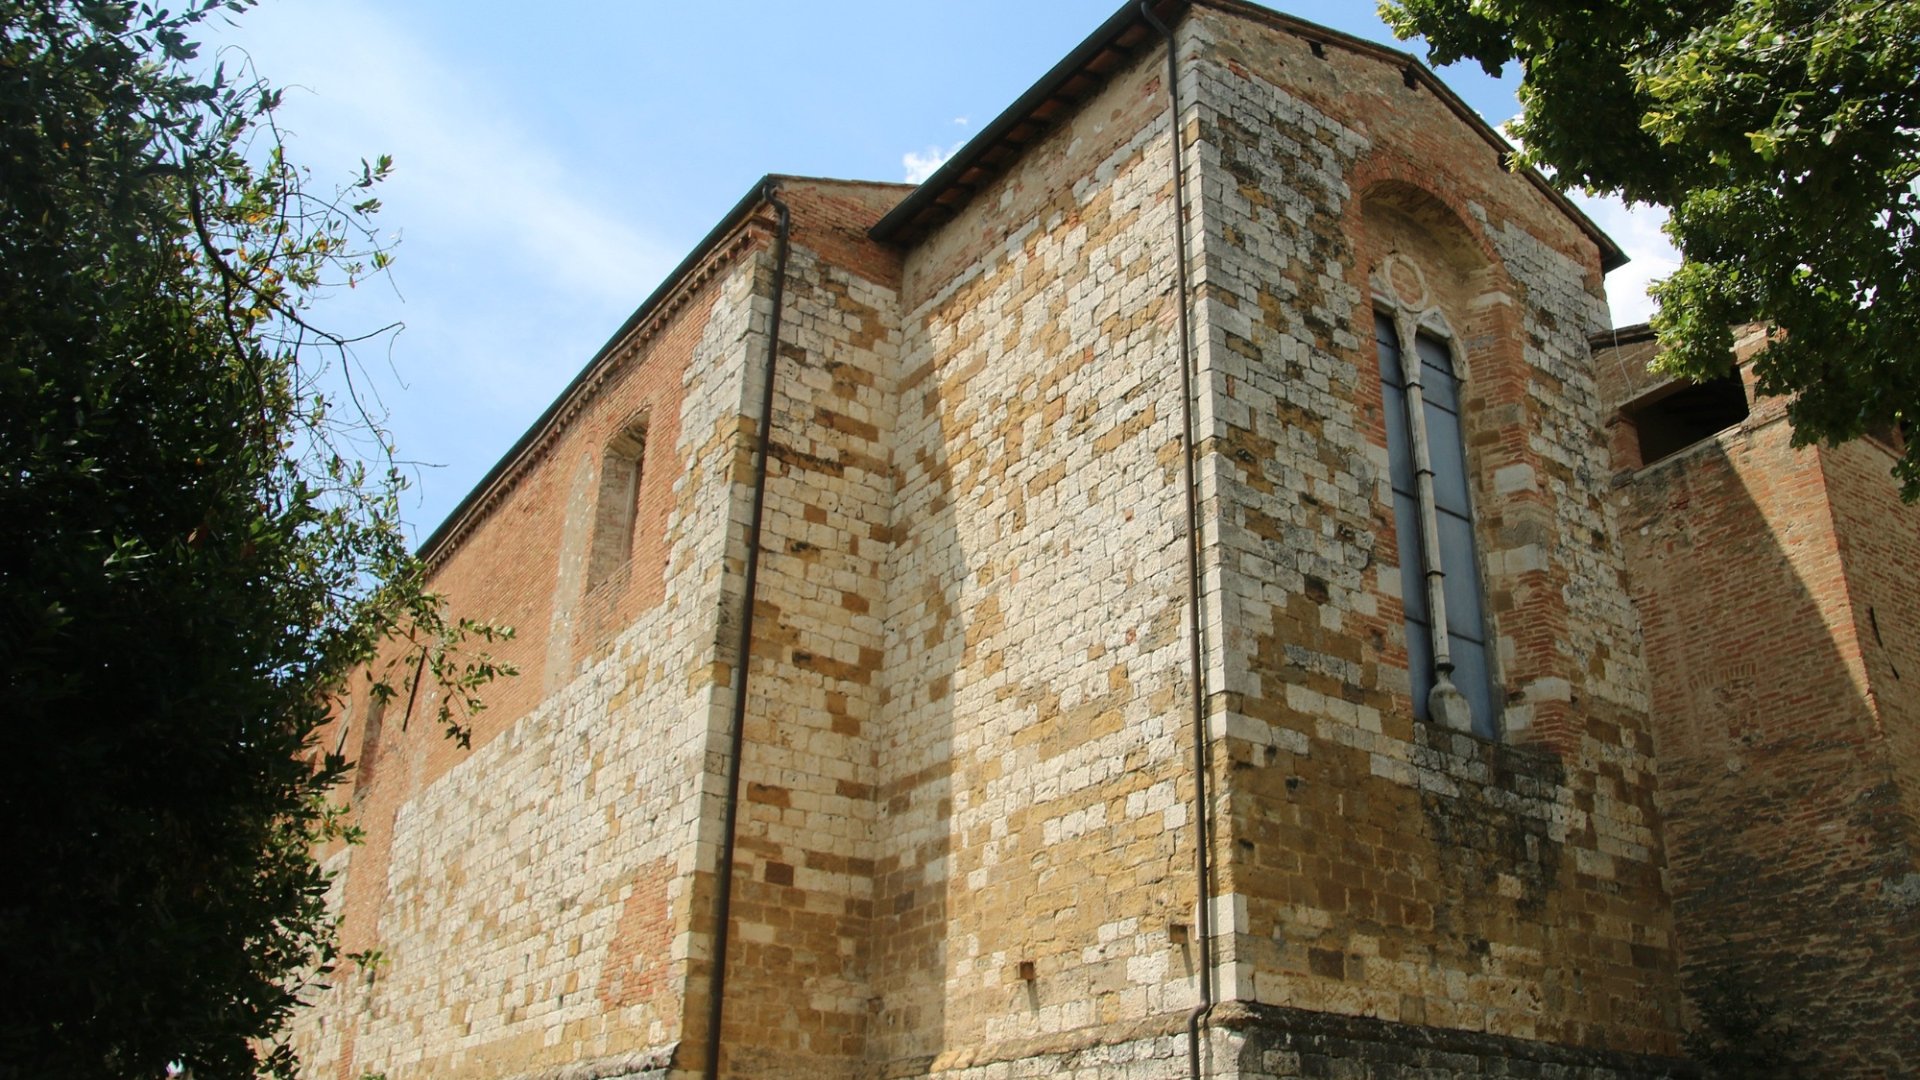 Convento di San Francesco, Colle di Val d’Elsa